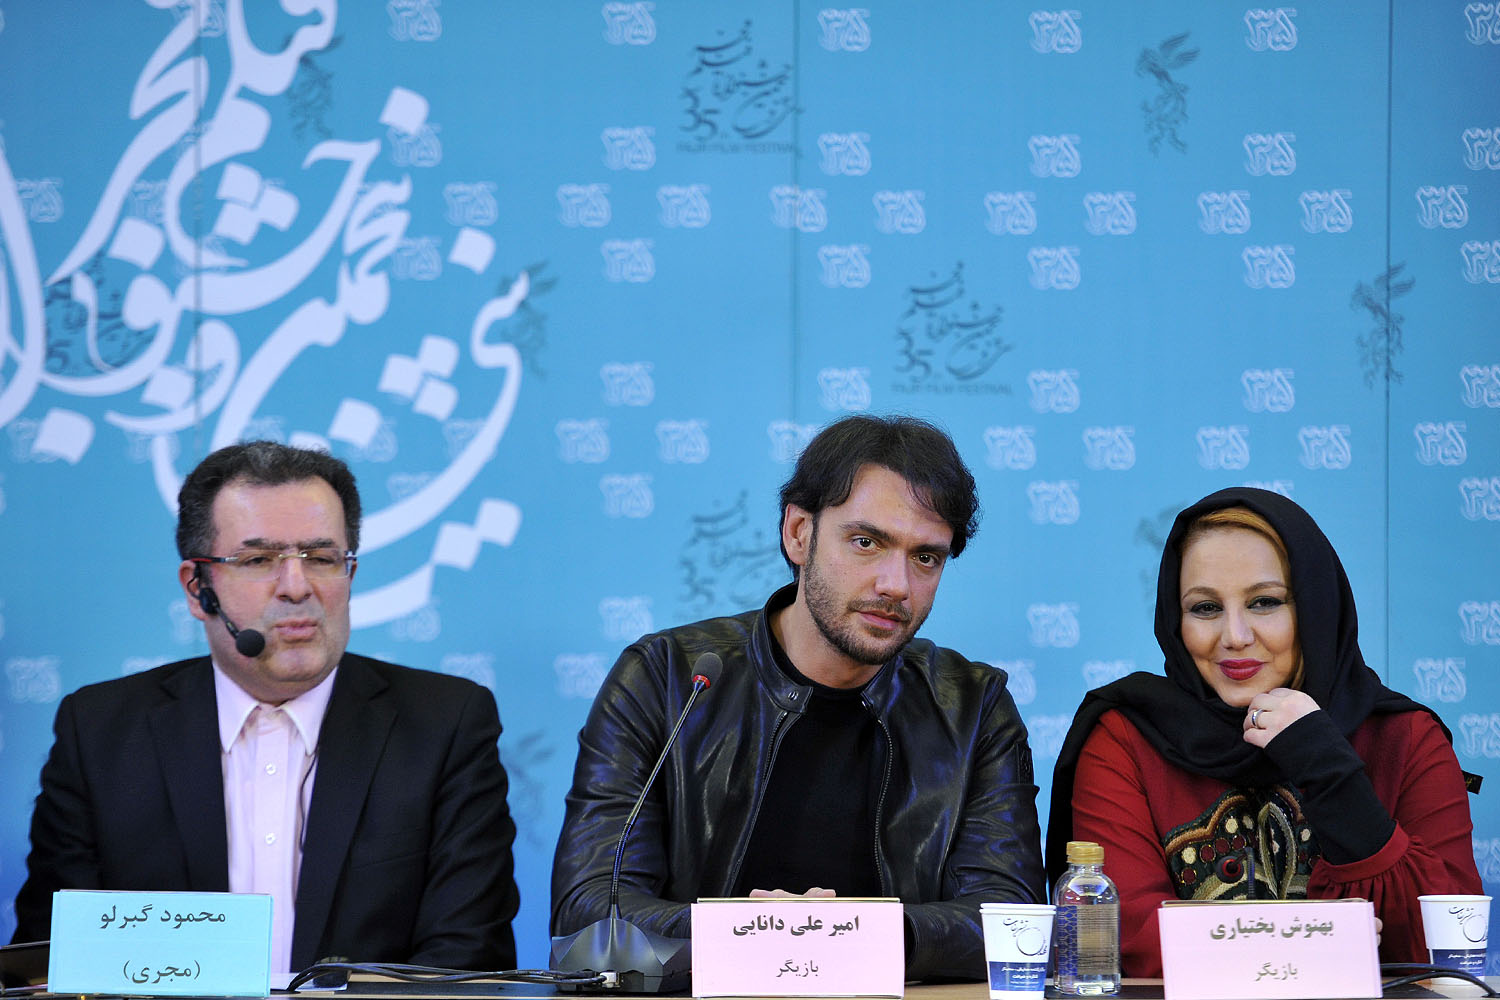 نشست خبری فیلم سینمایی انزوا در روز پنجم جشنواره فیلم فجر در کاخ جشنواره (3)